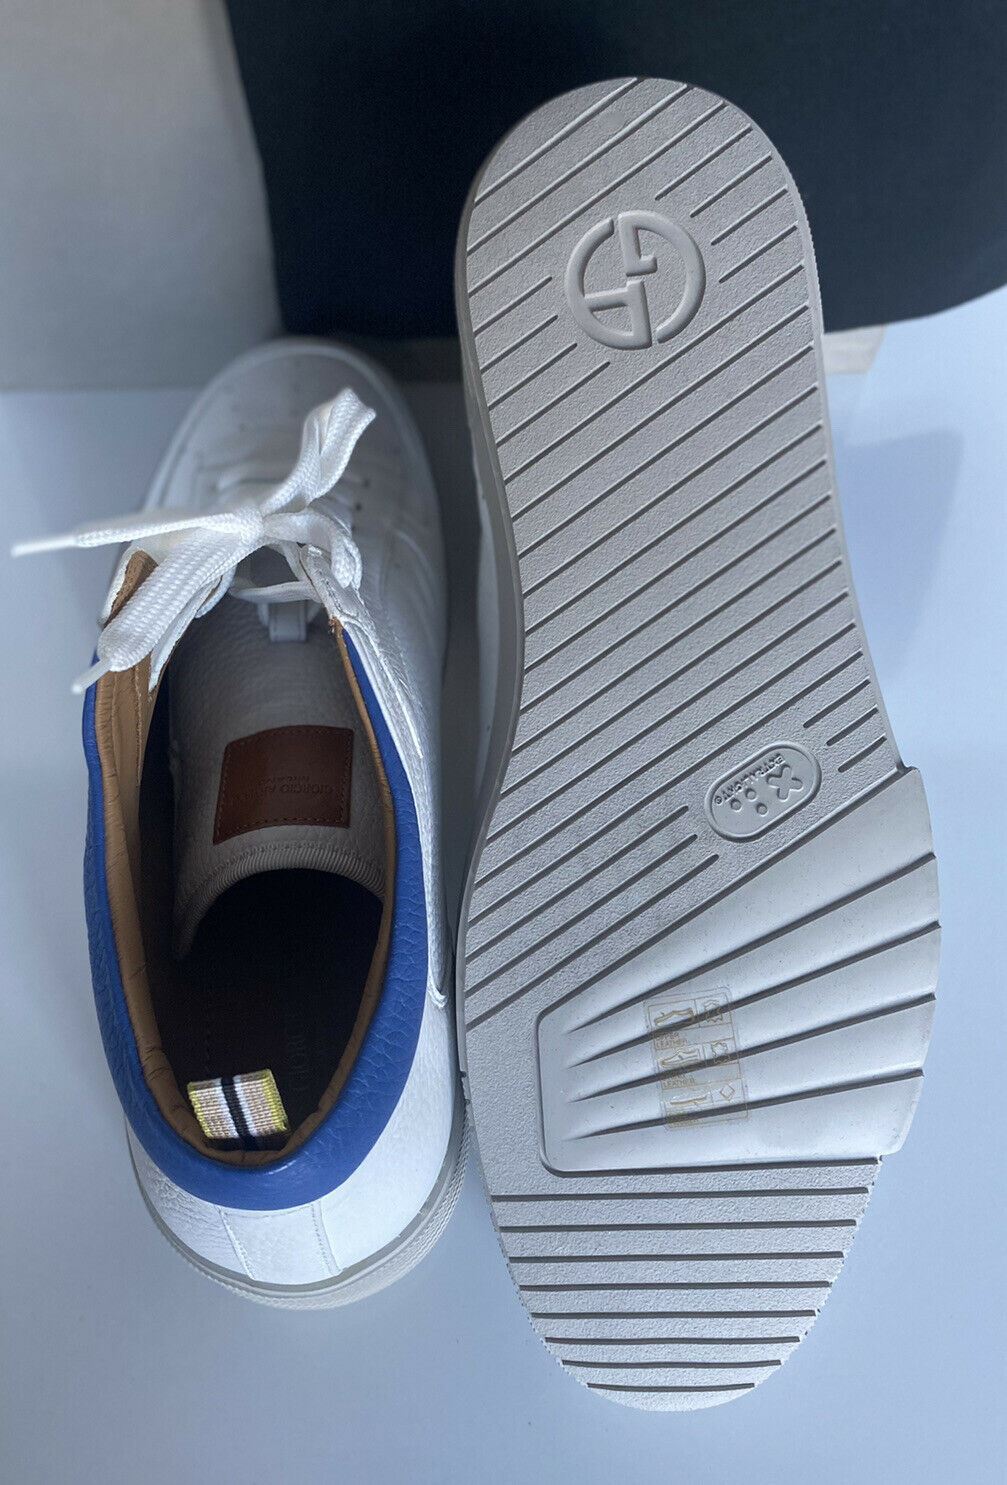 Мужские белые высокие кроссовки Giorgio Armani 875 долларов США 12,5 США (45,5 евро) X2Z020 